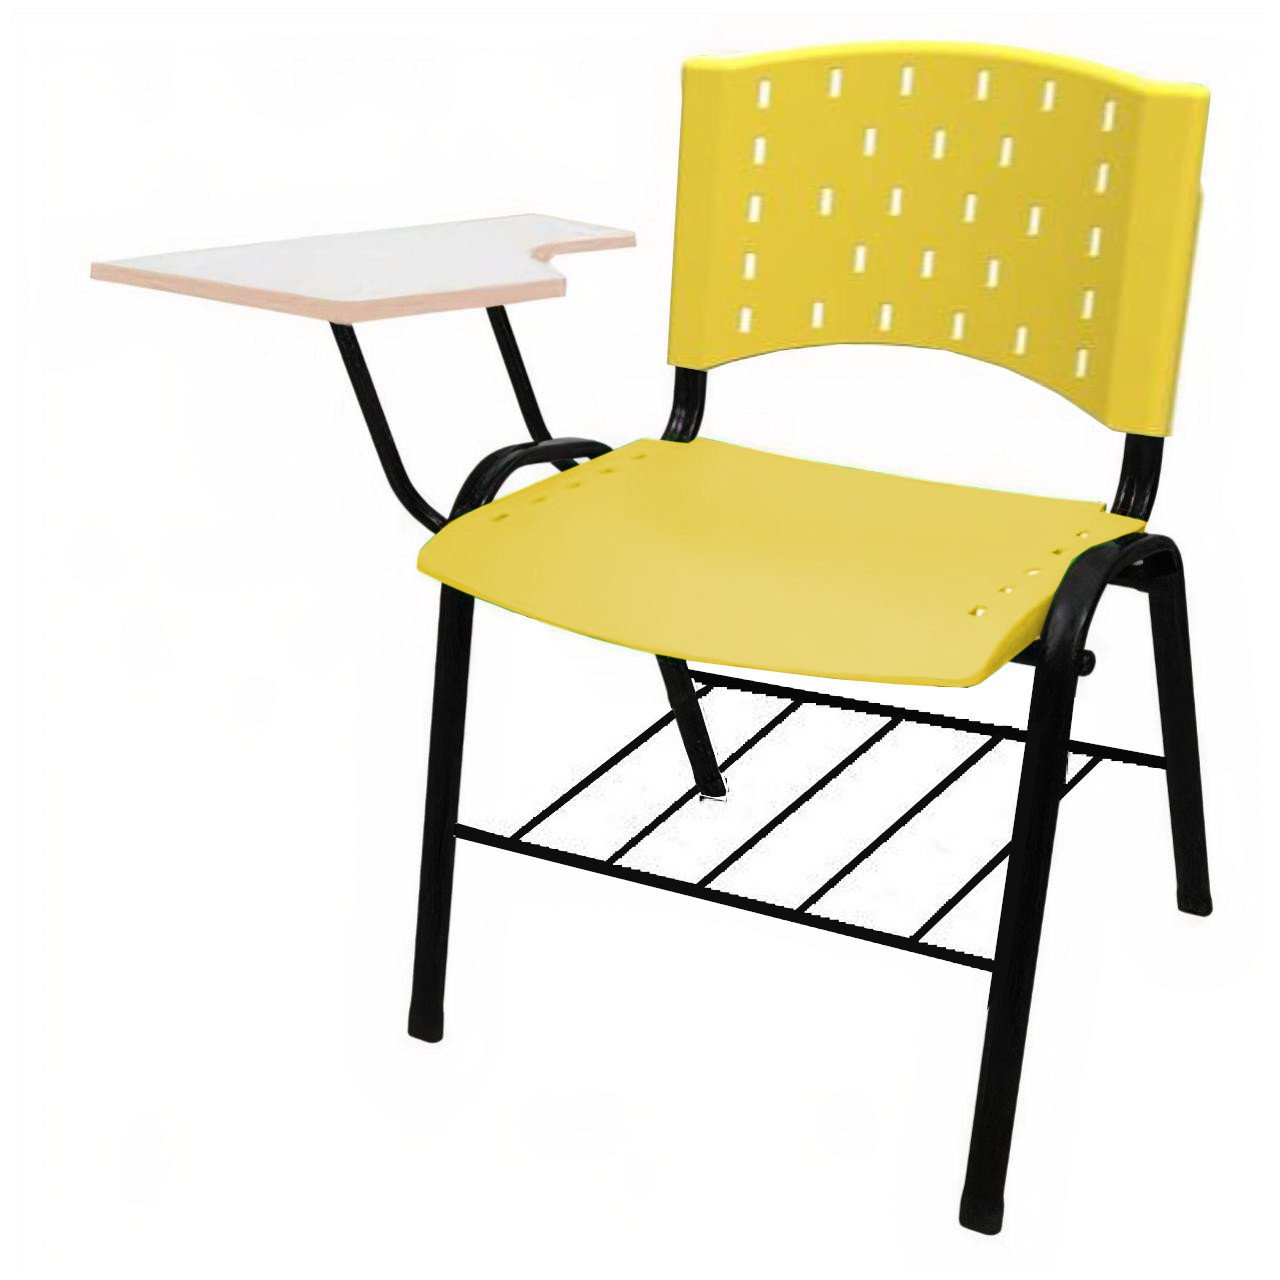 KIT 10 Cadeiras Universitárias com Prancheta e Porta Livros - Cor Amarelo - REAPLAST - 32029 - 4